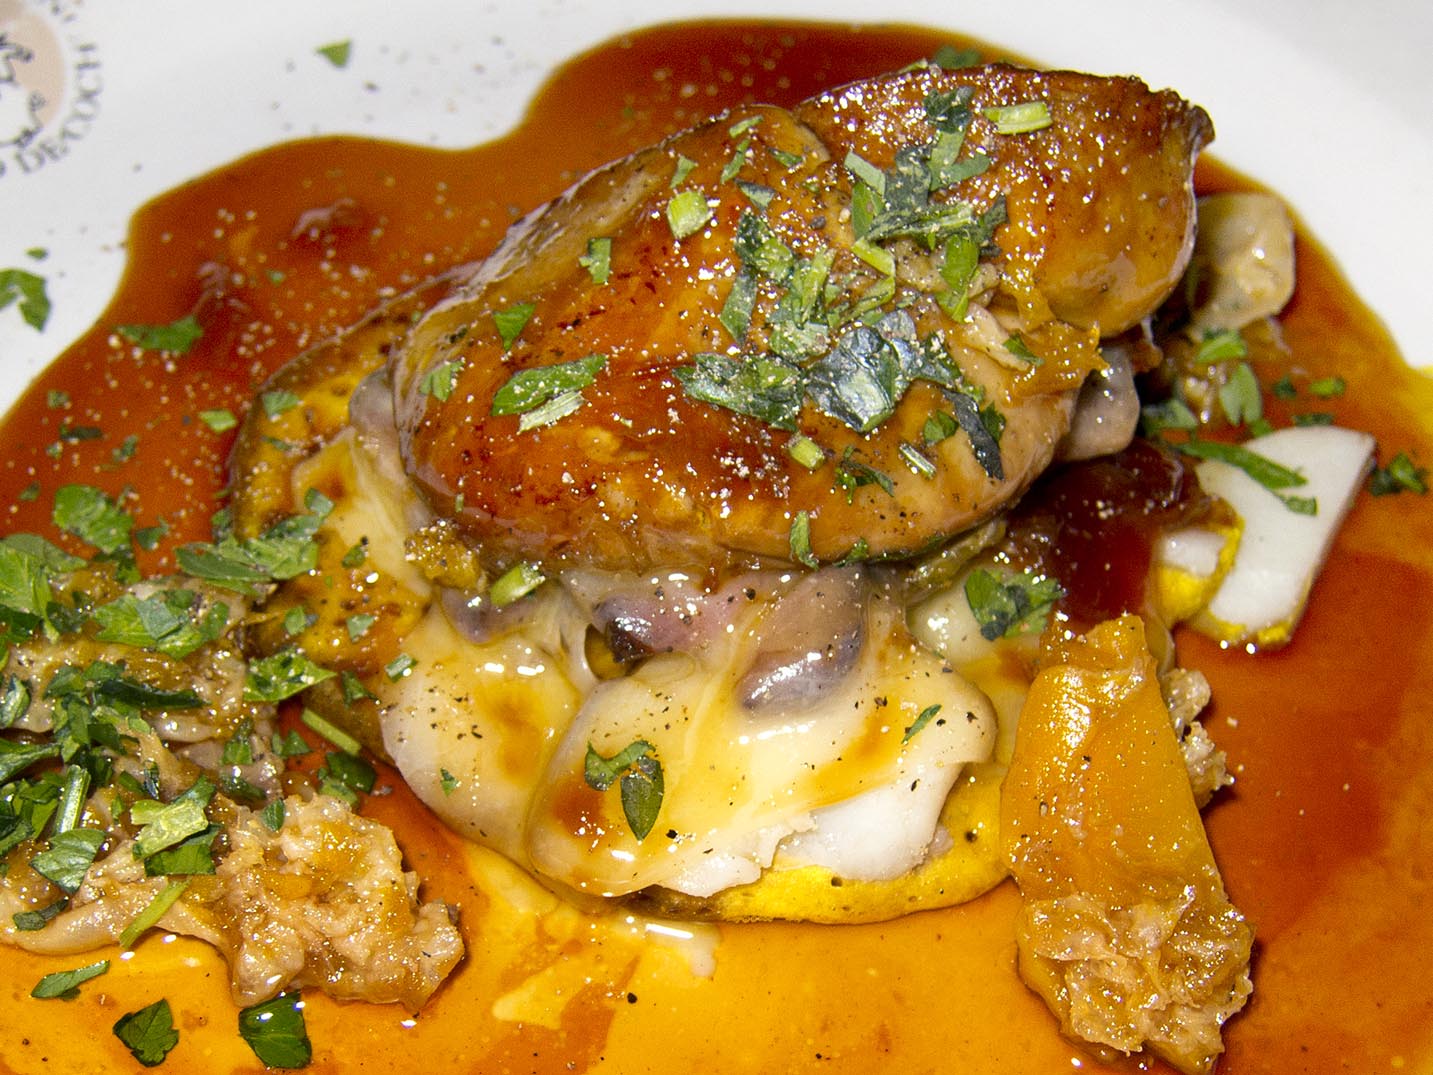 Foie gras dishes